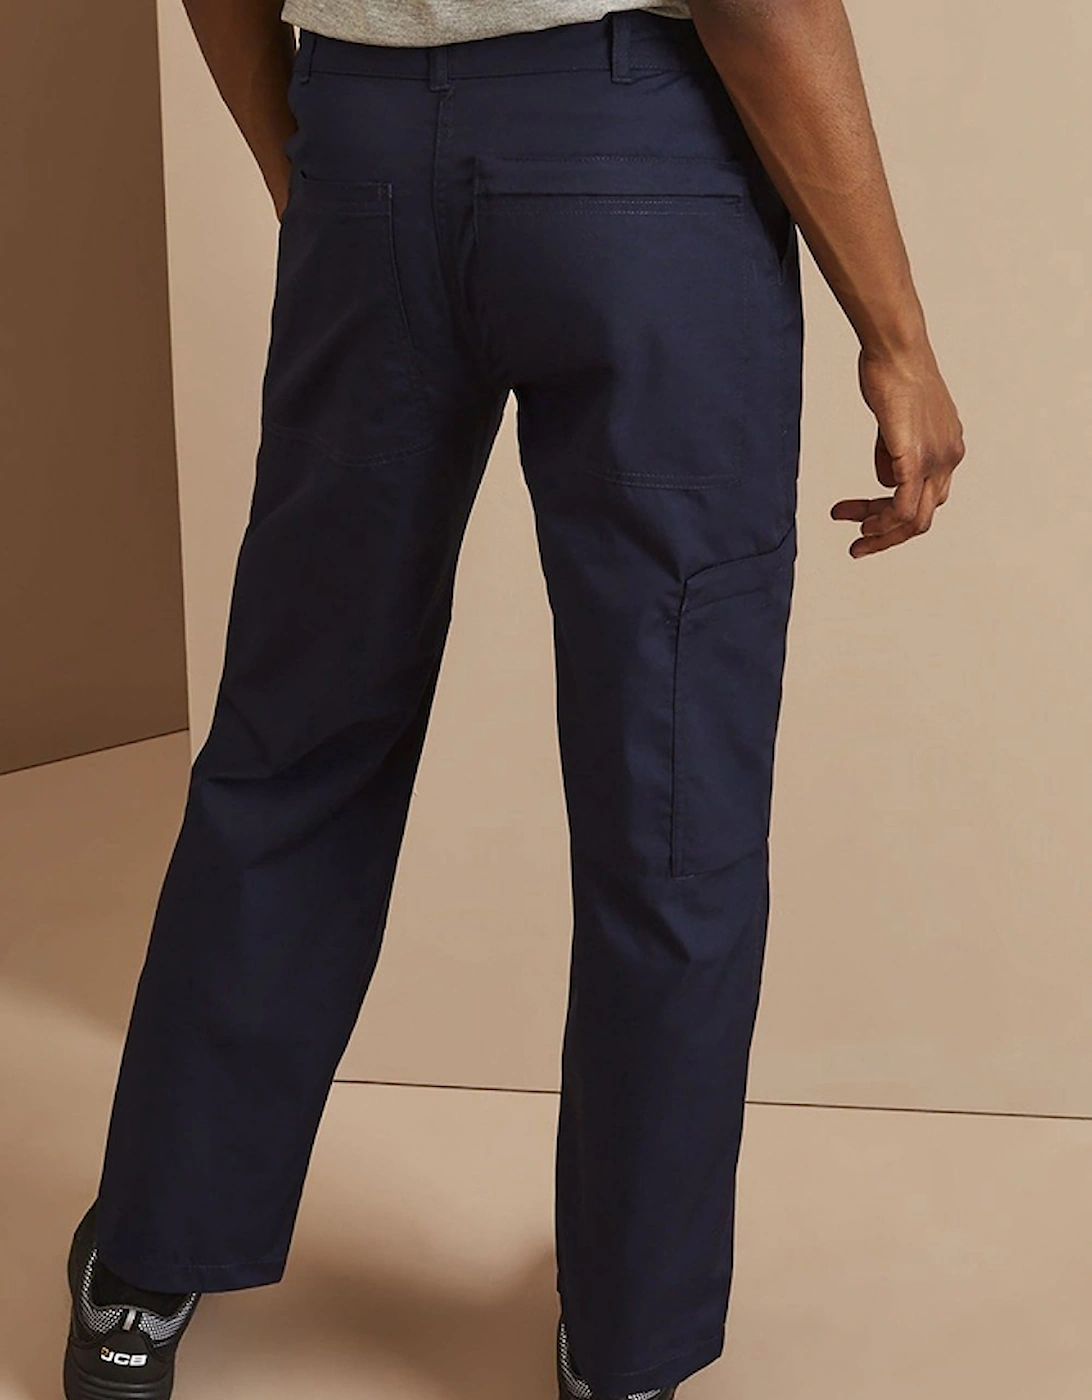 Ladies New Action Trouser (Short) / Pants